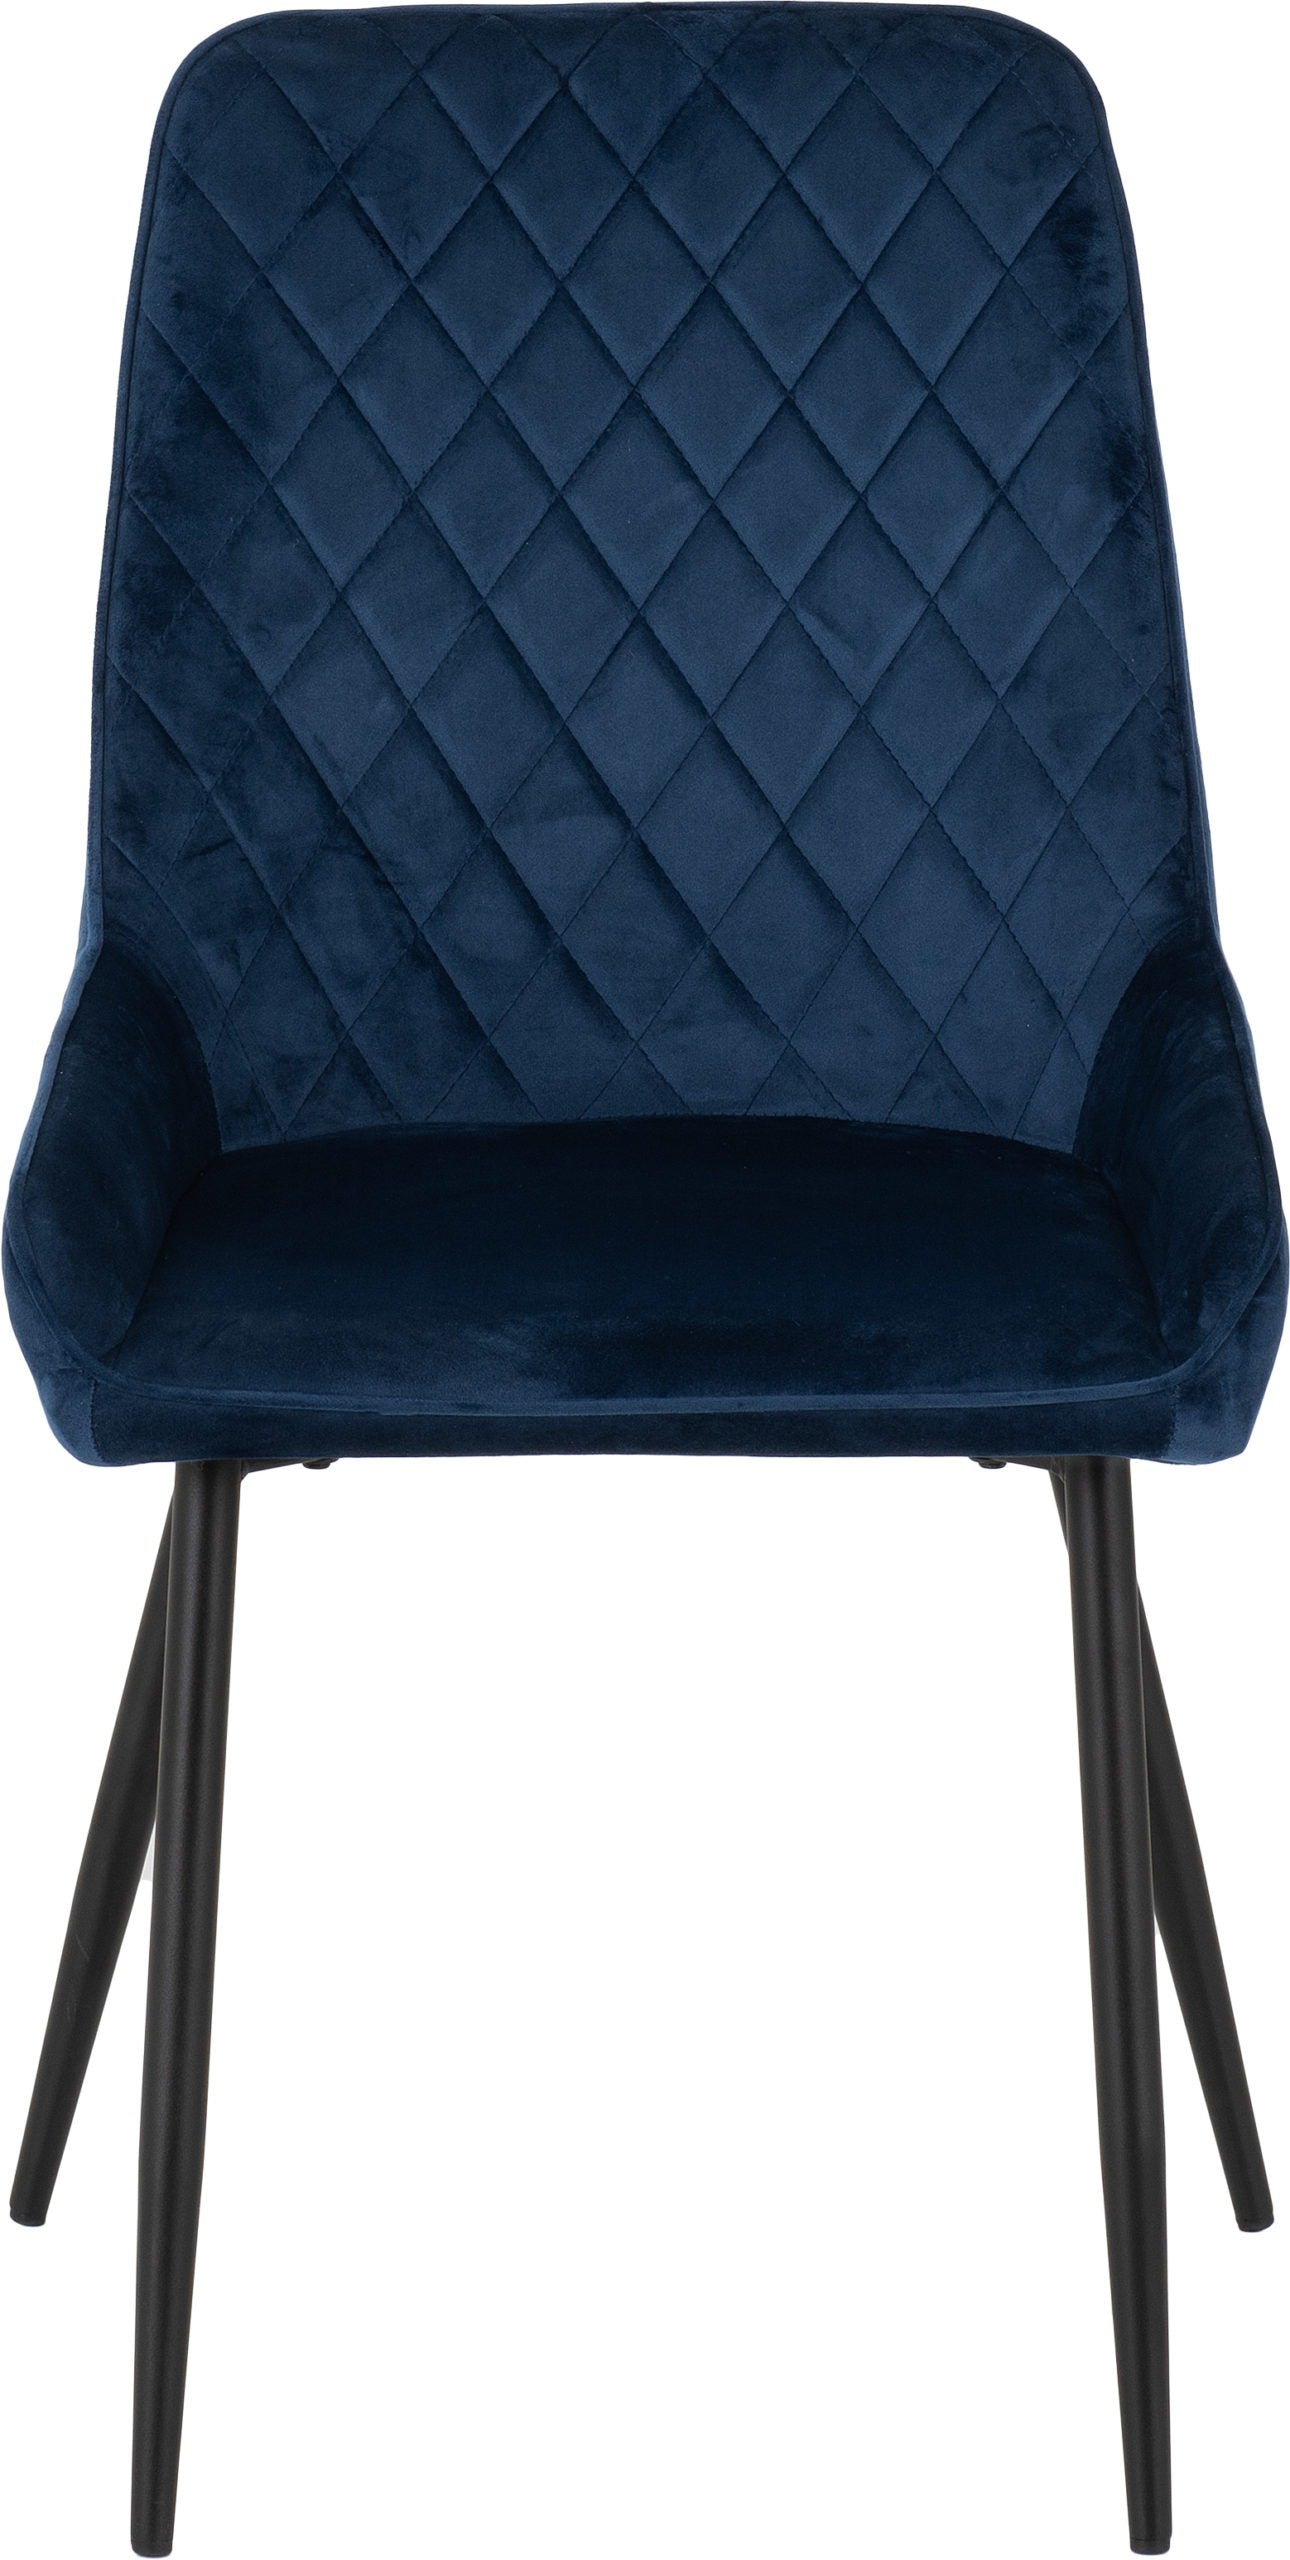 Avery Chair Sapphire Blue Velvet- The Right Buy Store